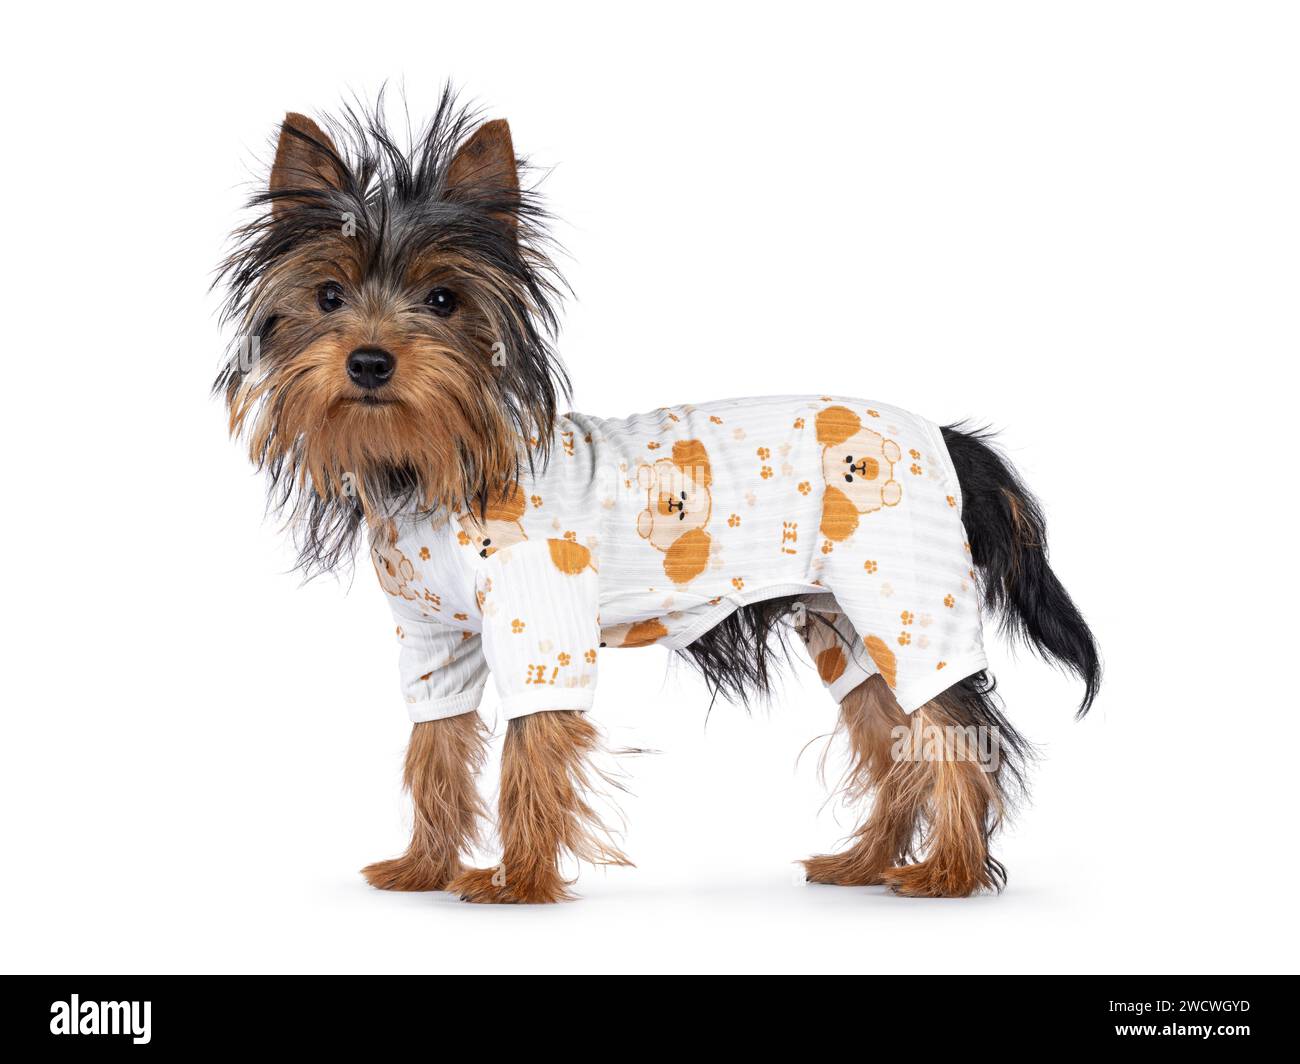 Mignon petit chien noir et tan Yorkshire Terrier chiot, debout sur le côté portant un pyjama. Regarder vers la caméra. Isolé sur fond blanc. Banque D'Images